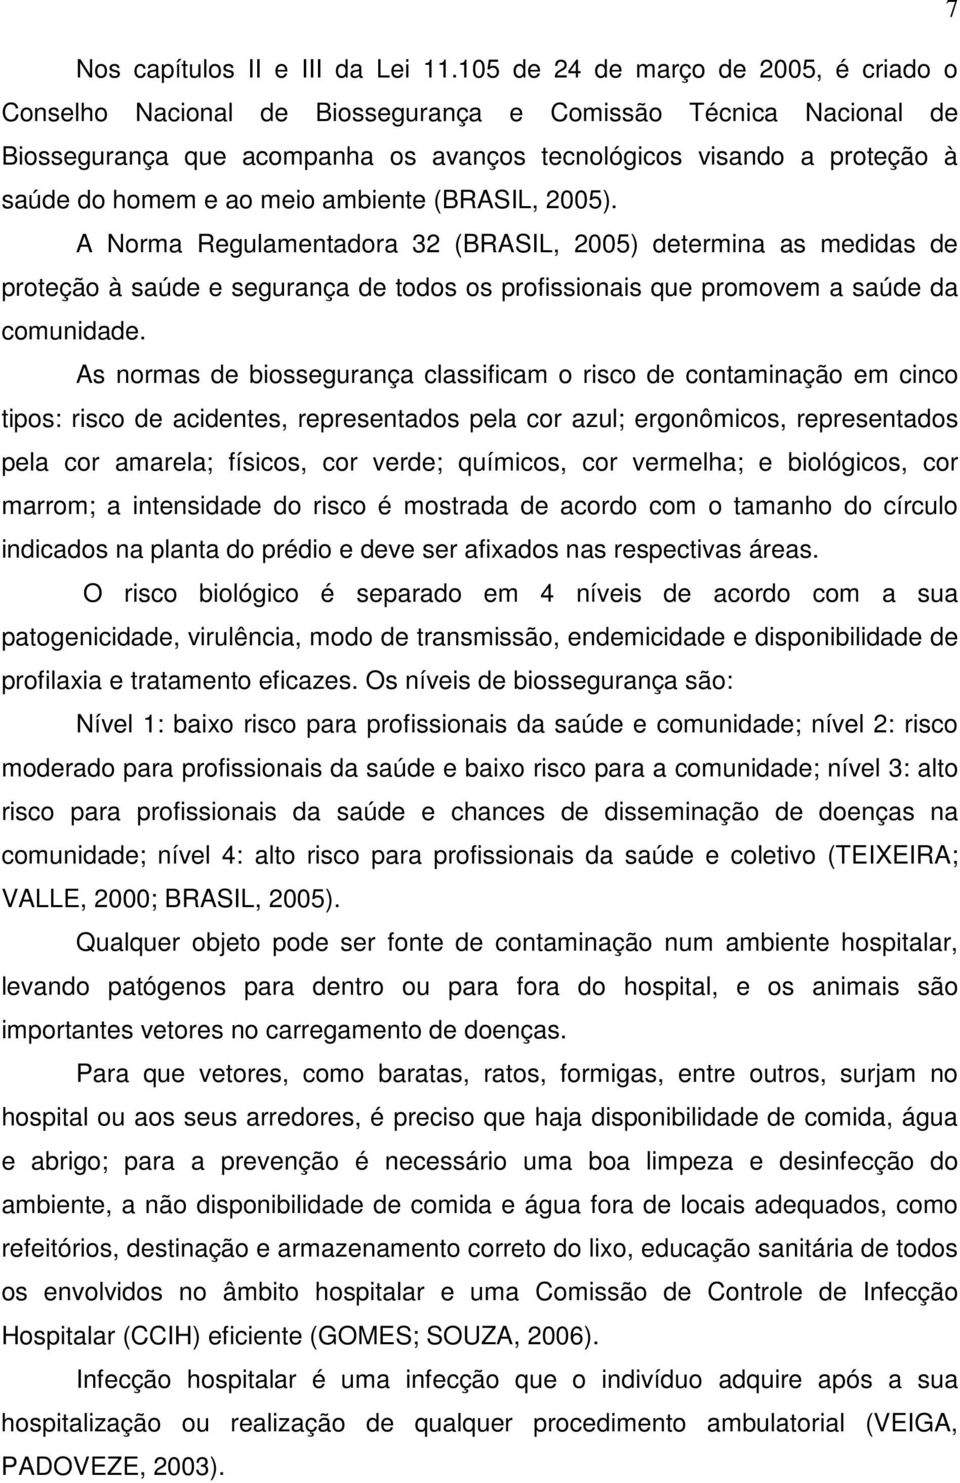 meio ambiente (BRASIL, 2005). A Norma Regulamentadora 32 (BRASIL, 2005) determina as medidas de proteção à saúde e segurança de todos os profissionais que promovem a saúde da comunidade.